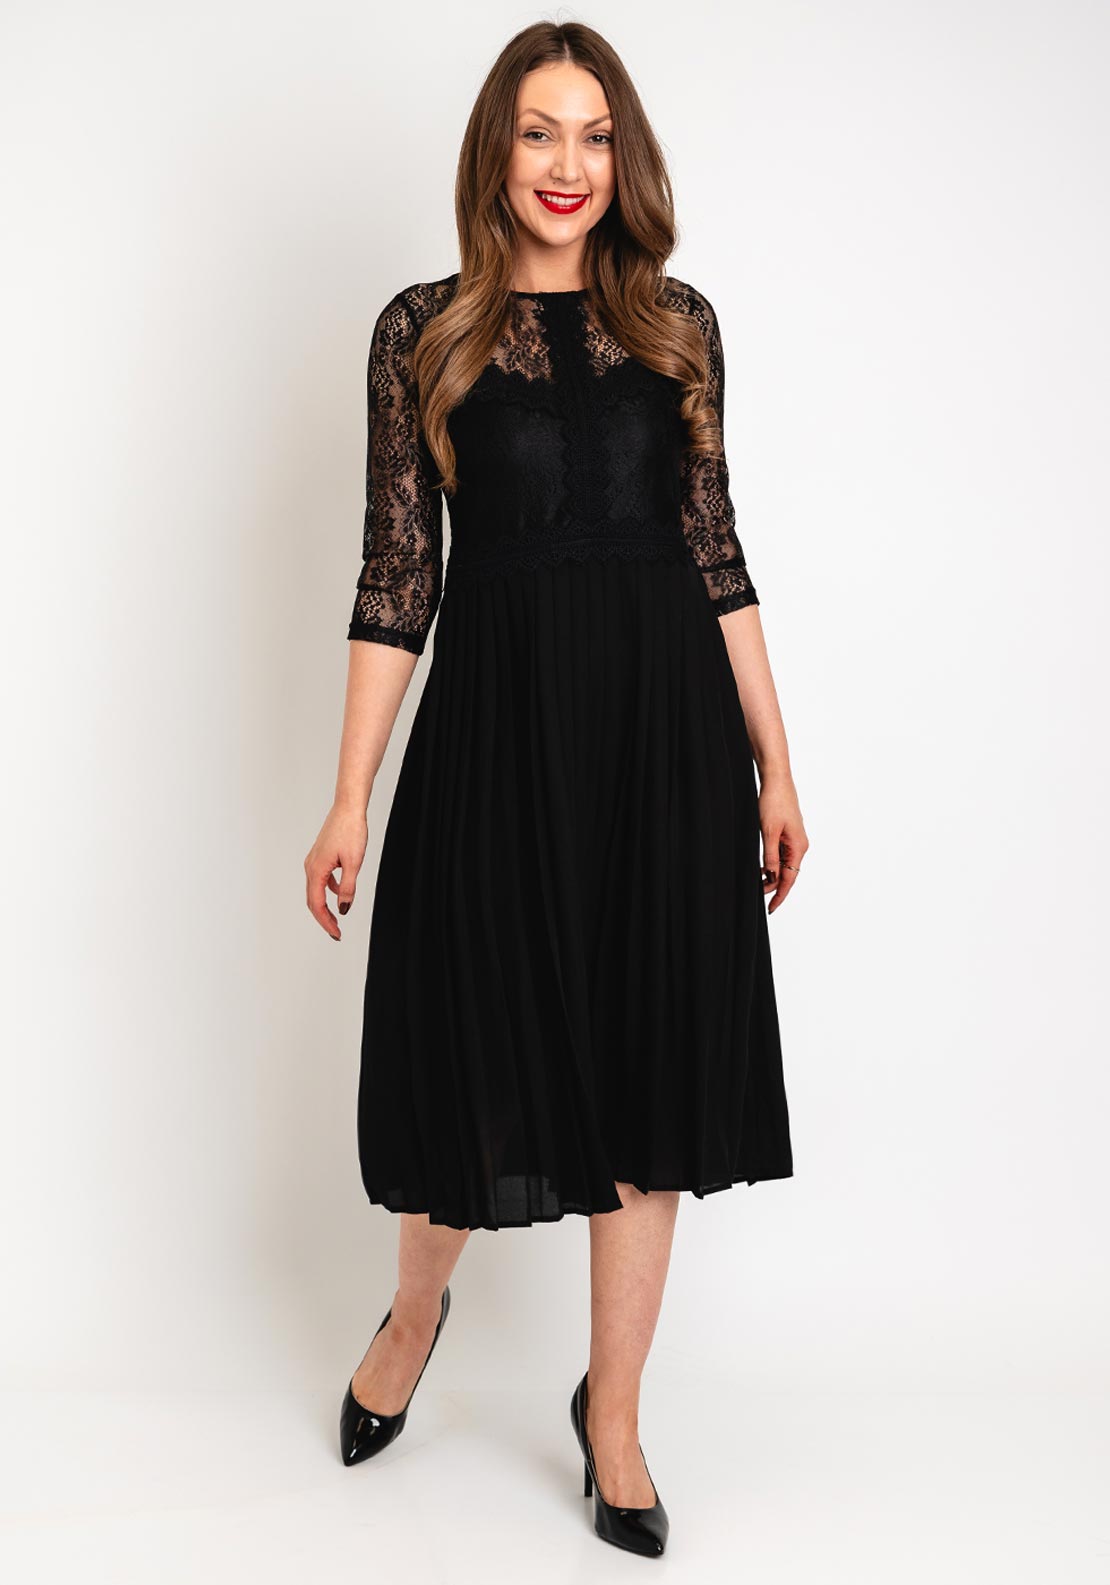 Tiffosi Pleated Skirt Midi Dress, Black - McElhinneys